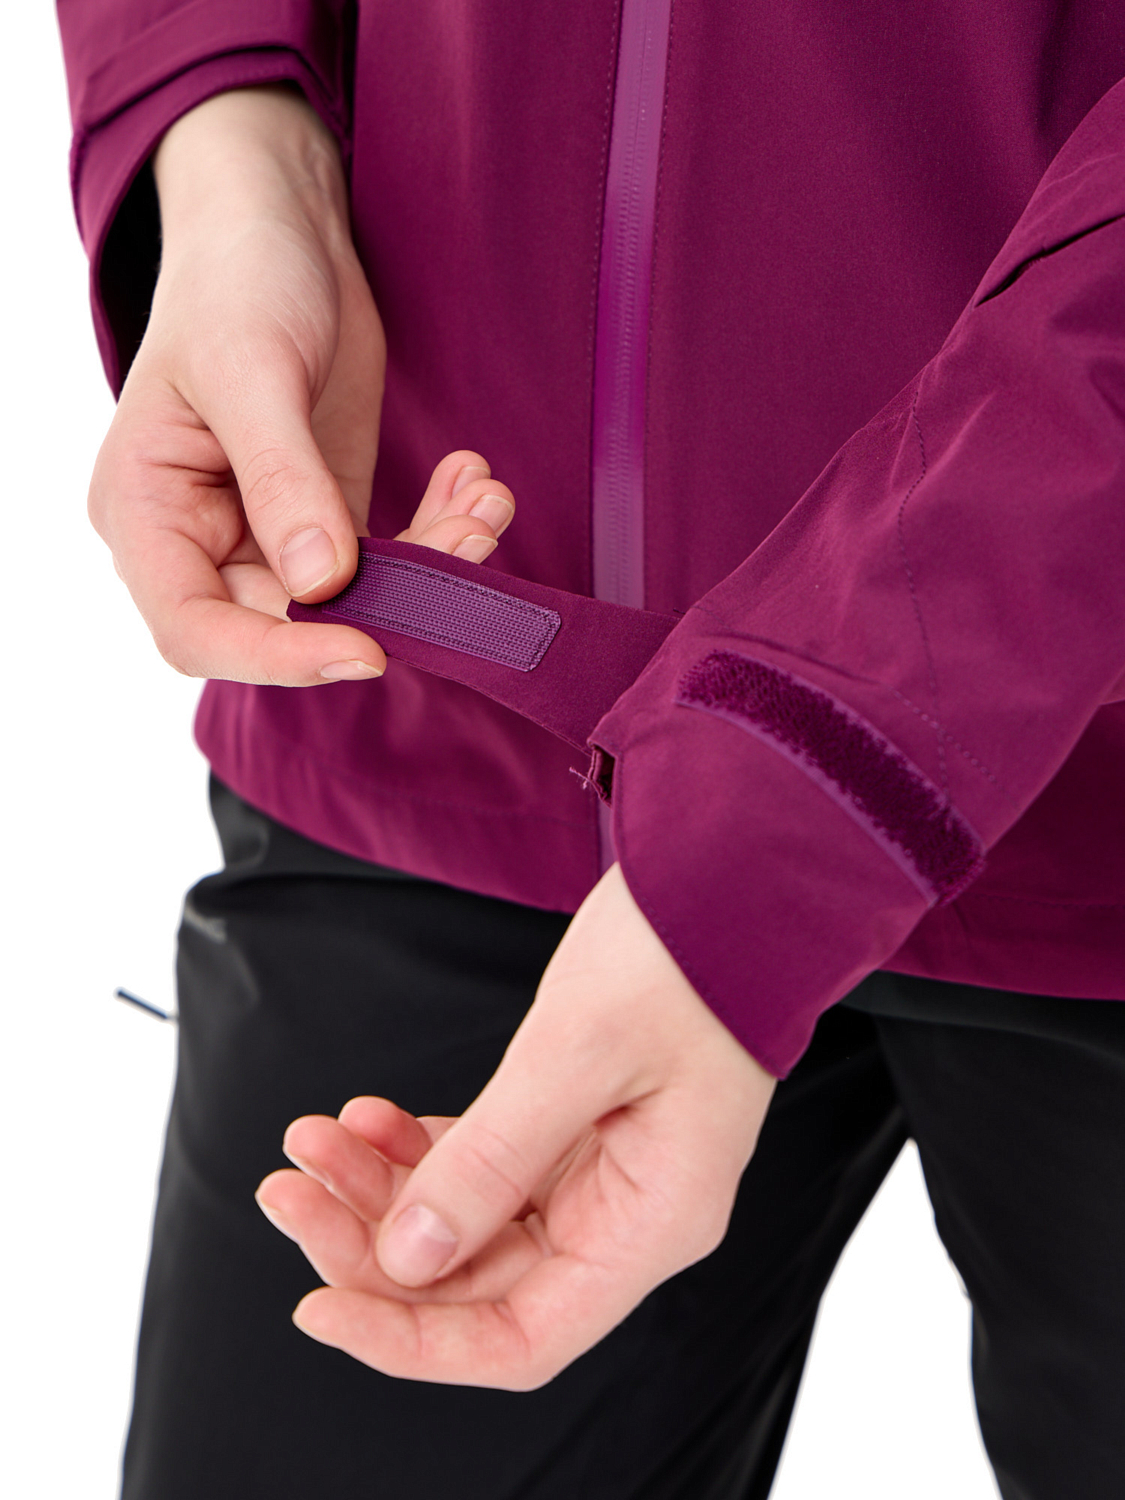 Куртка VIKING Trek Pro 2.0 Purple